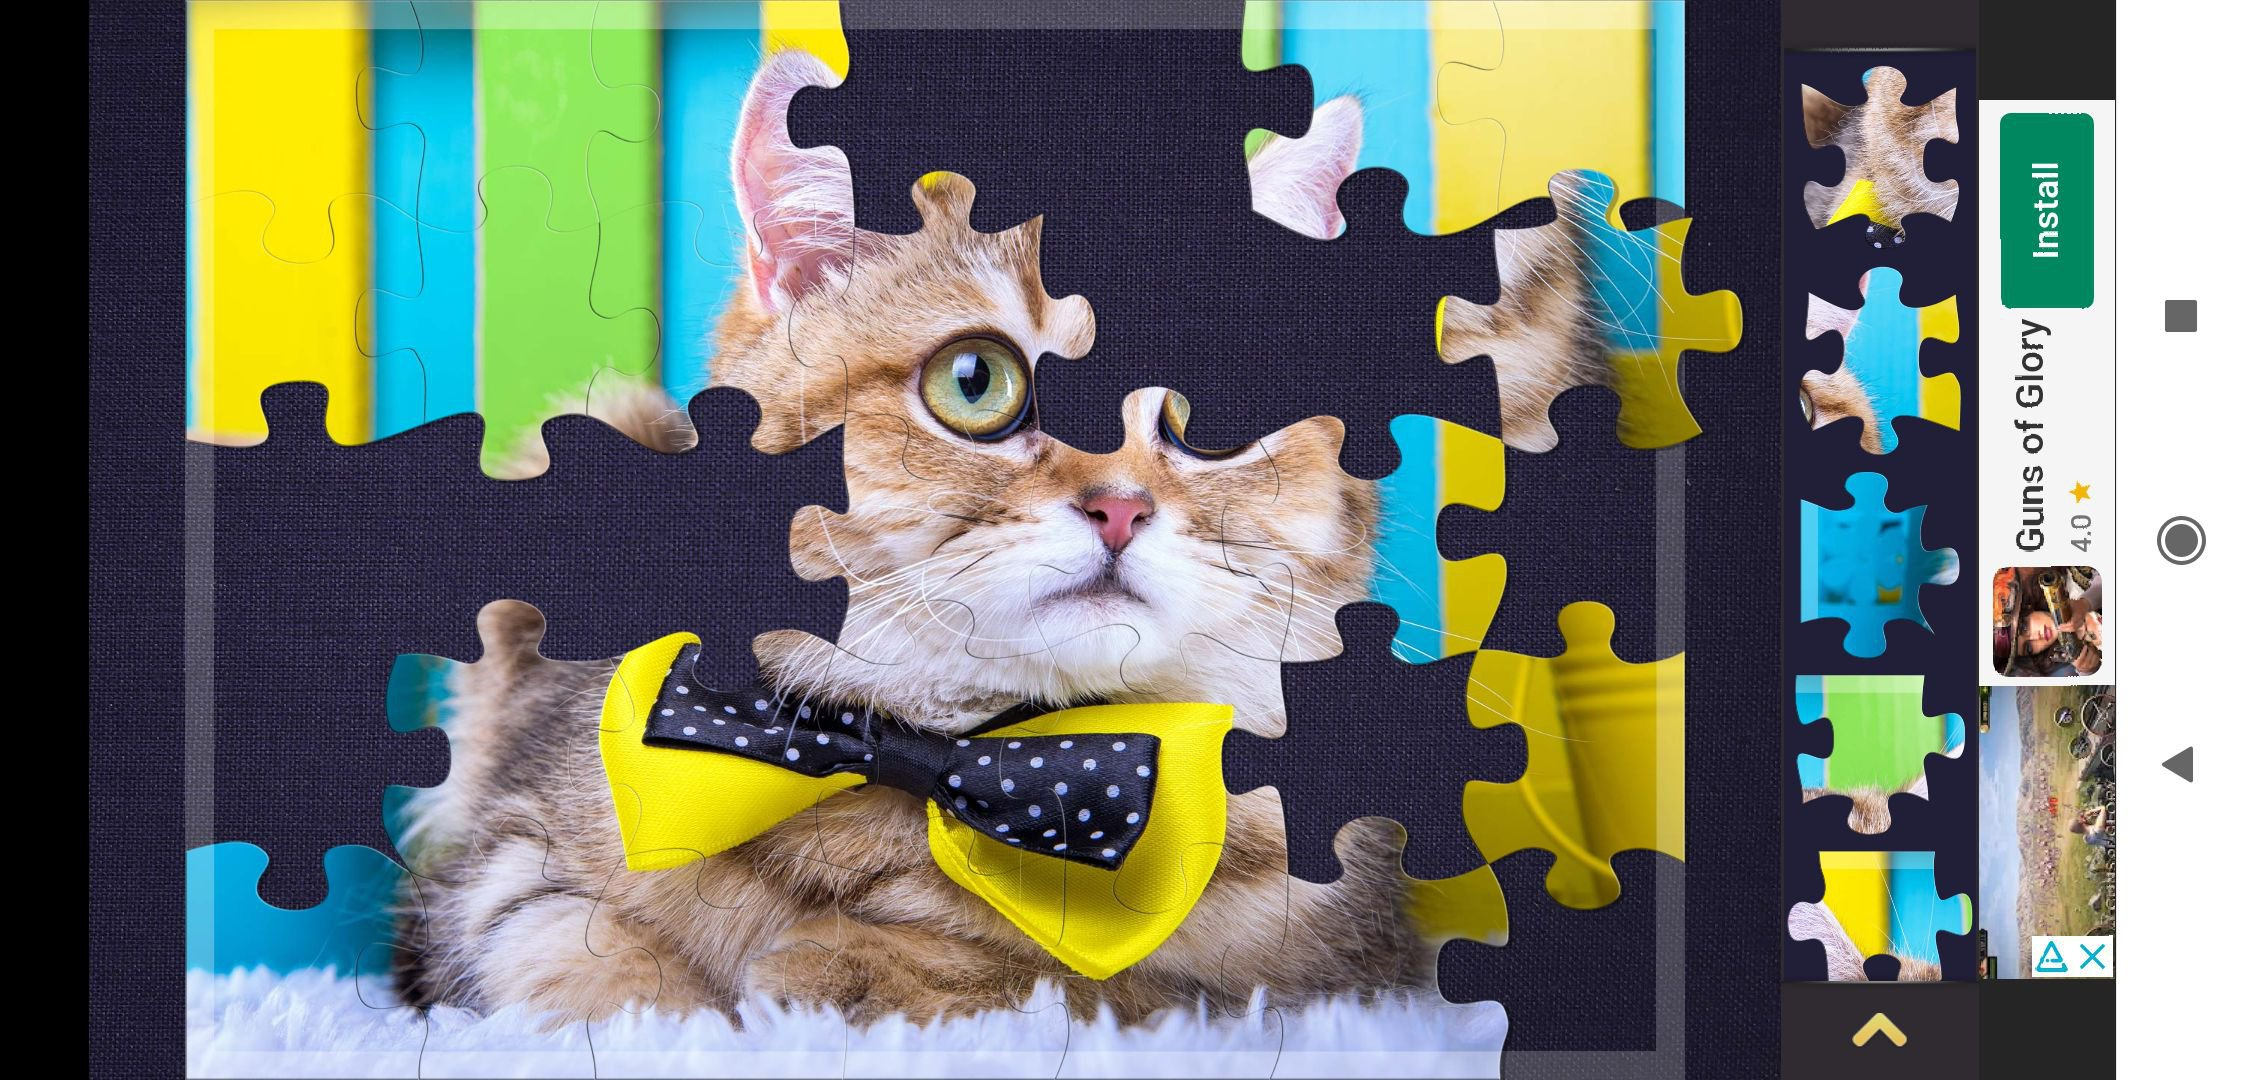 Magische Puzzles 5.20.2 - Download Für Android Apk Kostenlos ganzes Puzzle Online Kostenlos Puzzeln Jigsaw